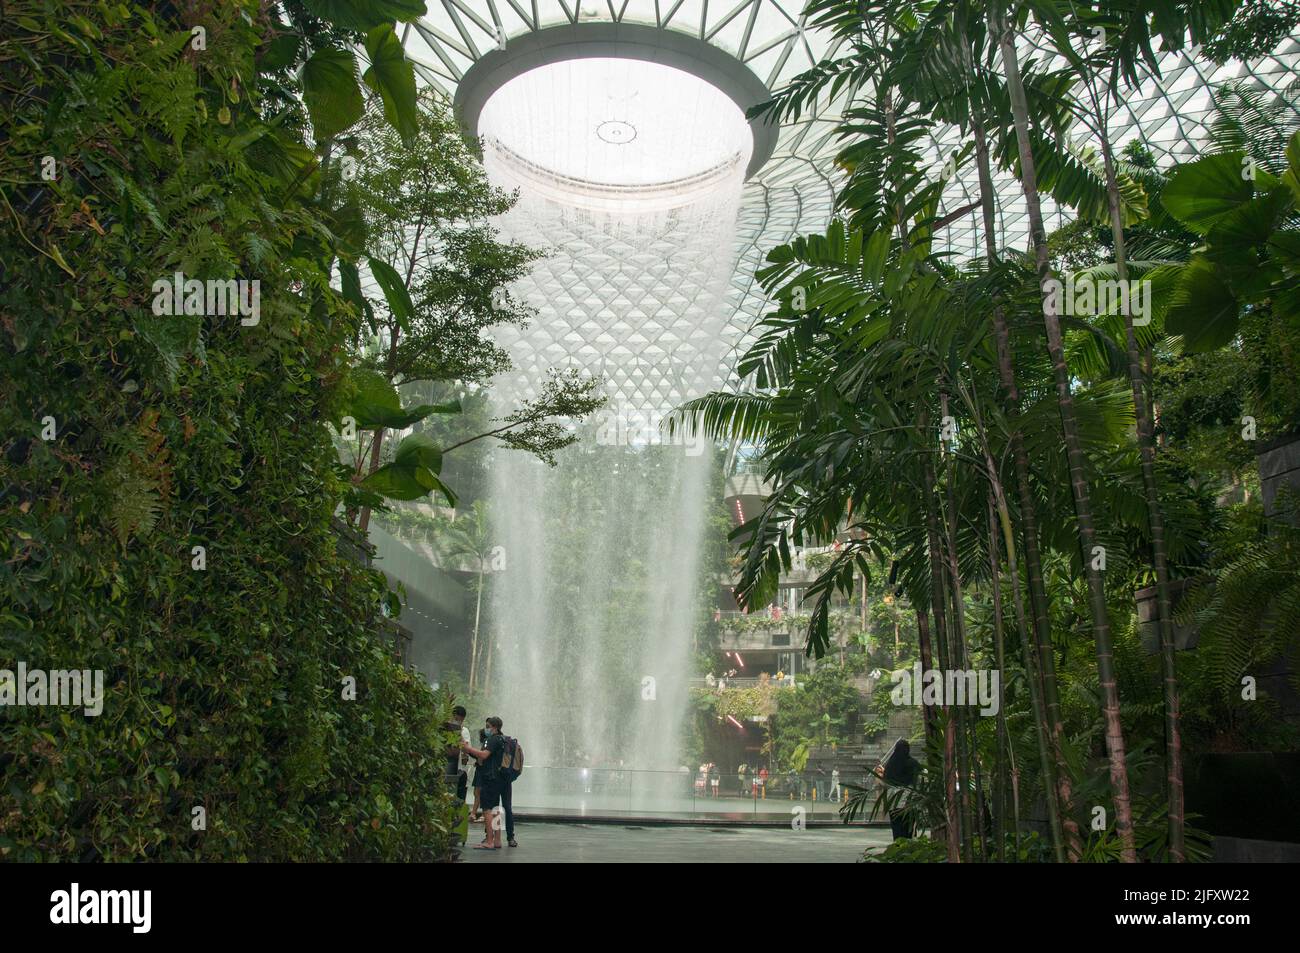 Con 40 metros de altura y agua en cascada desde el techo de Jewel en el aeropuerto Changi, HSBC Rain Vortex es la cascada interior más alta del mundo Foto de stock